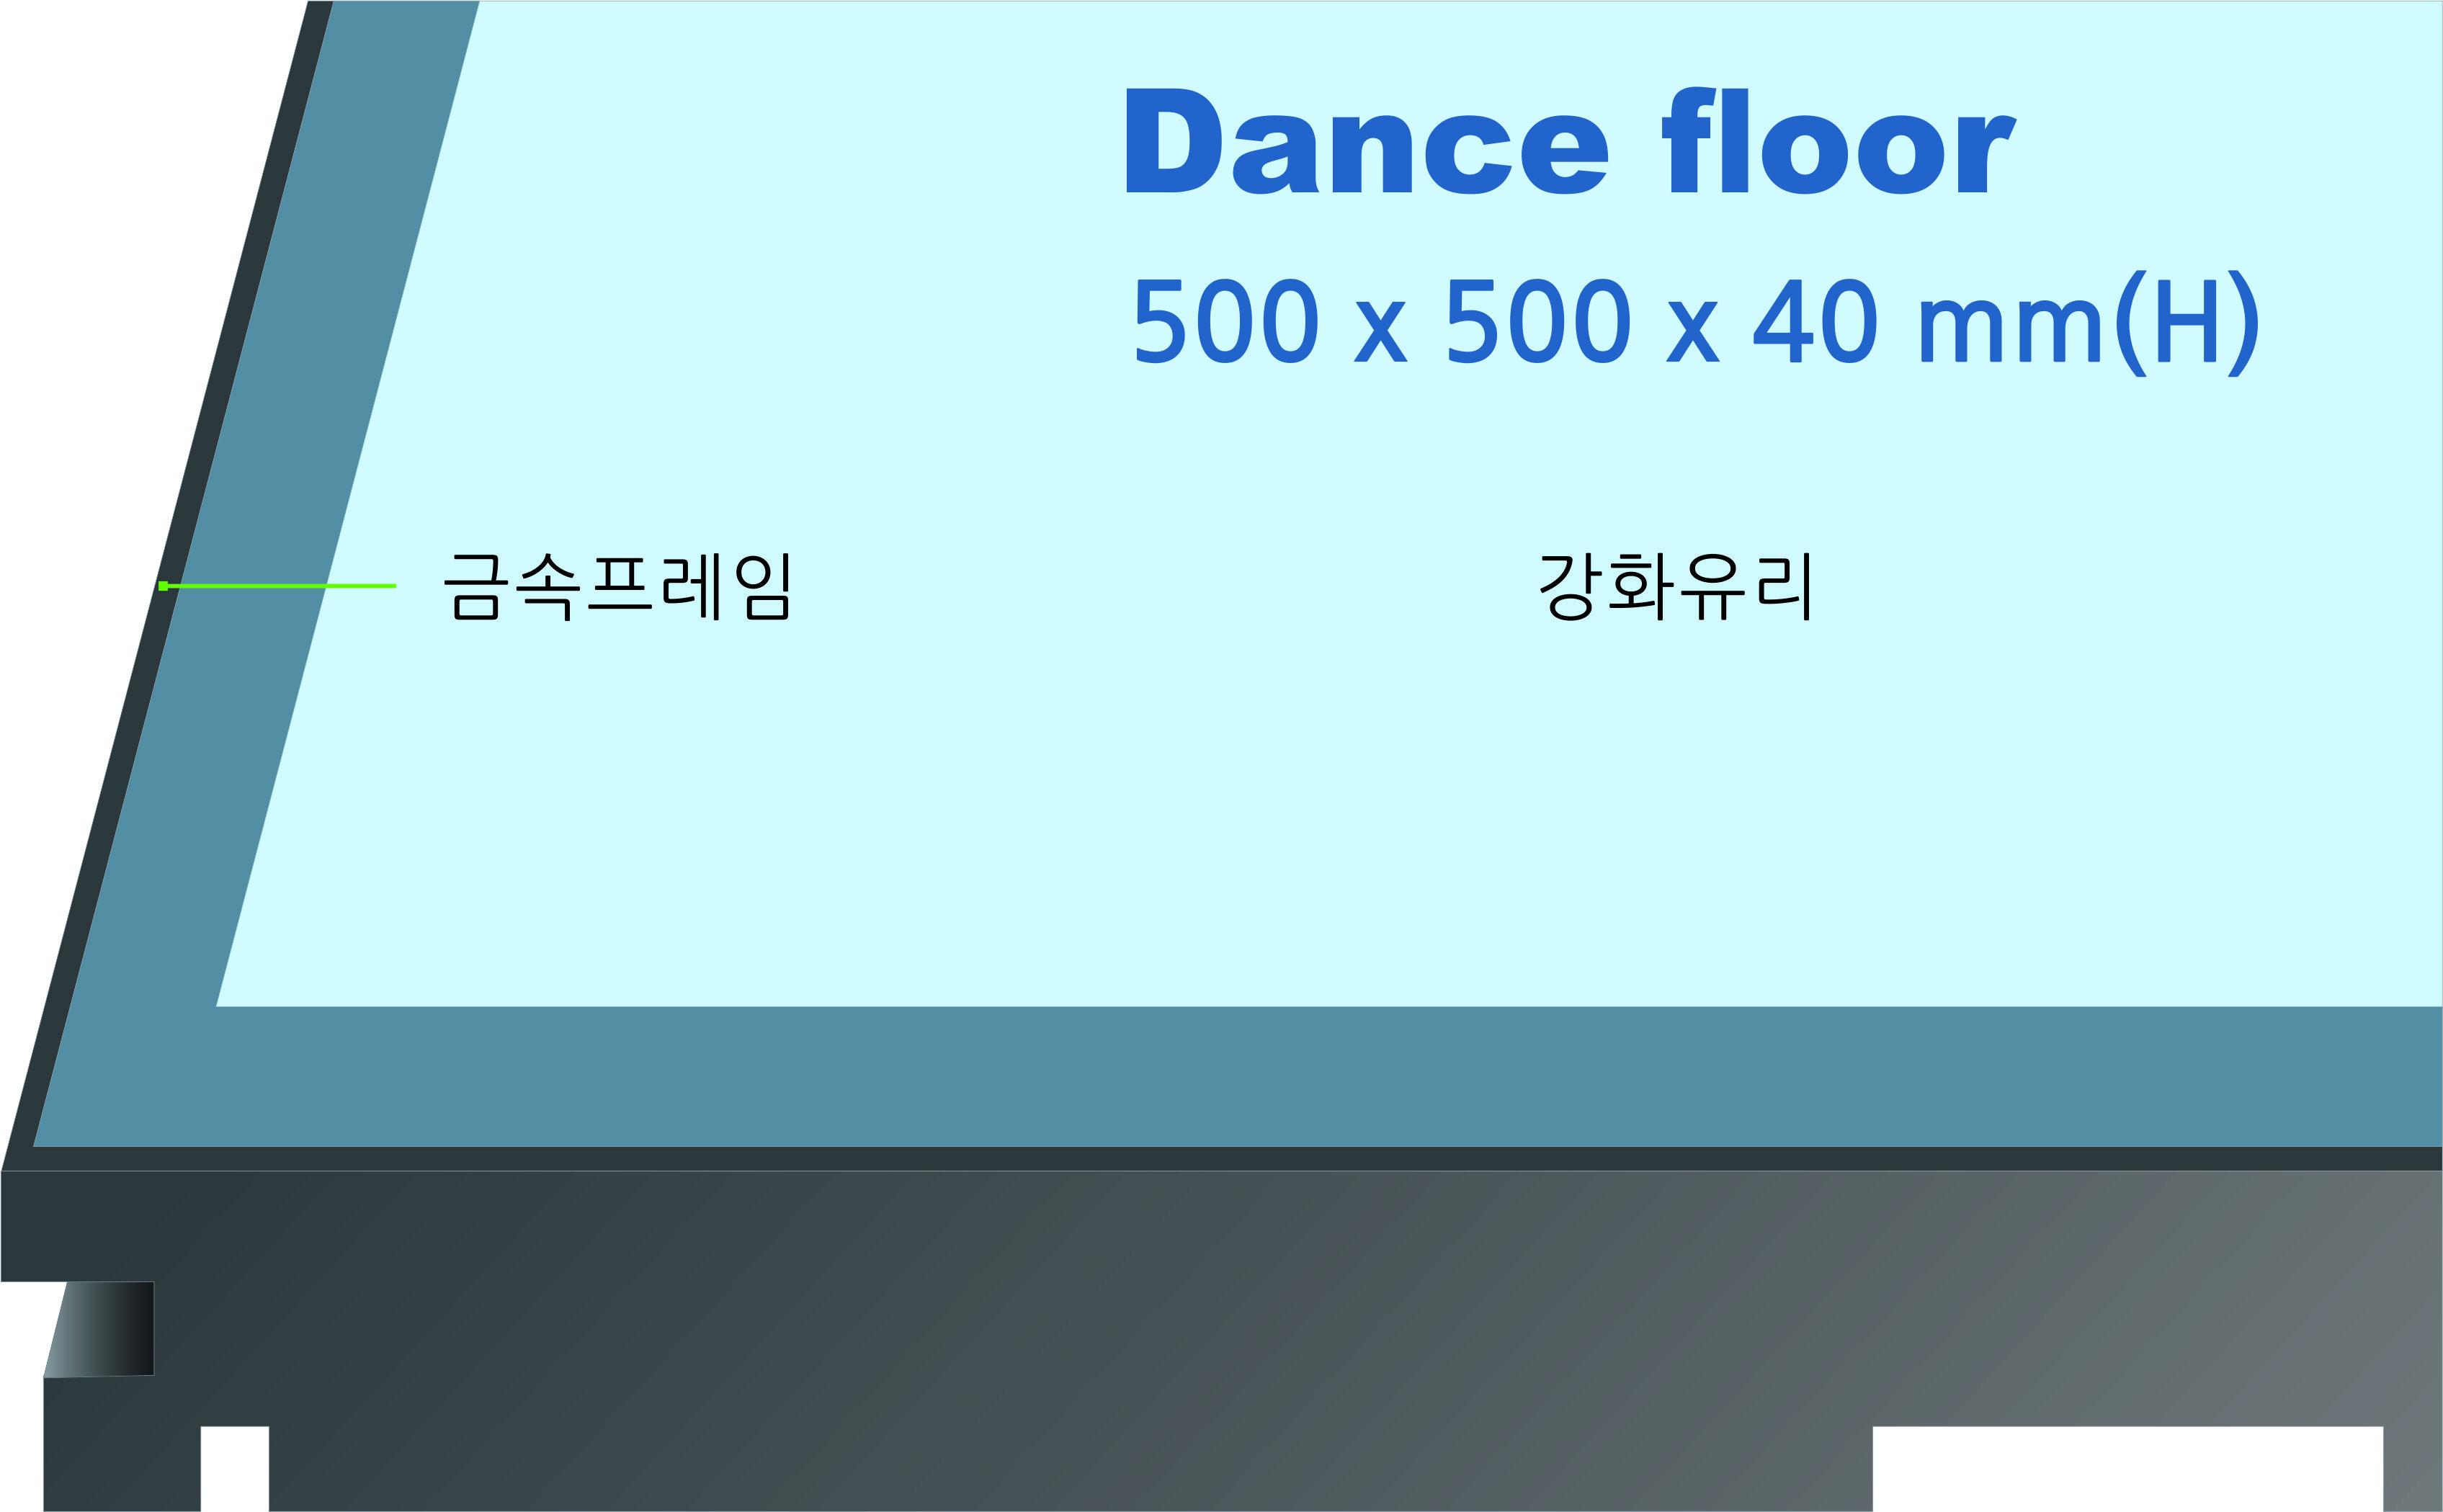 dancd_LED_floor.jpg